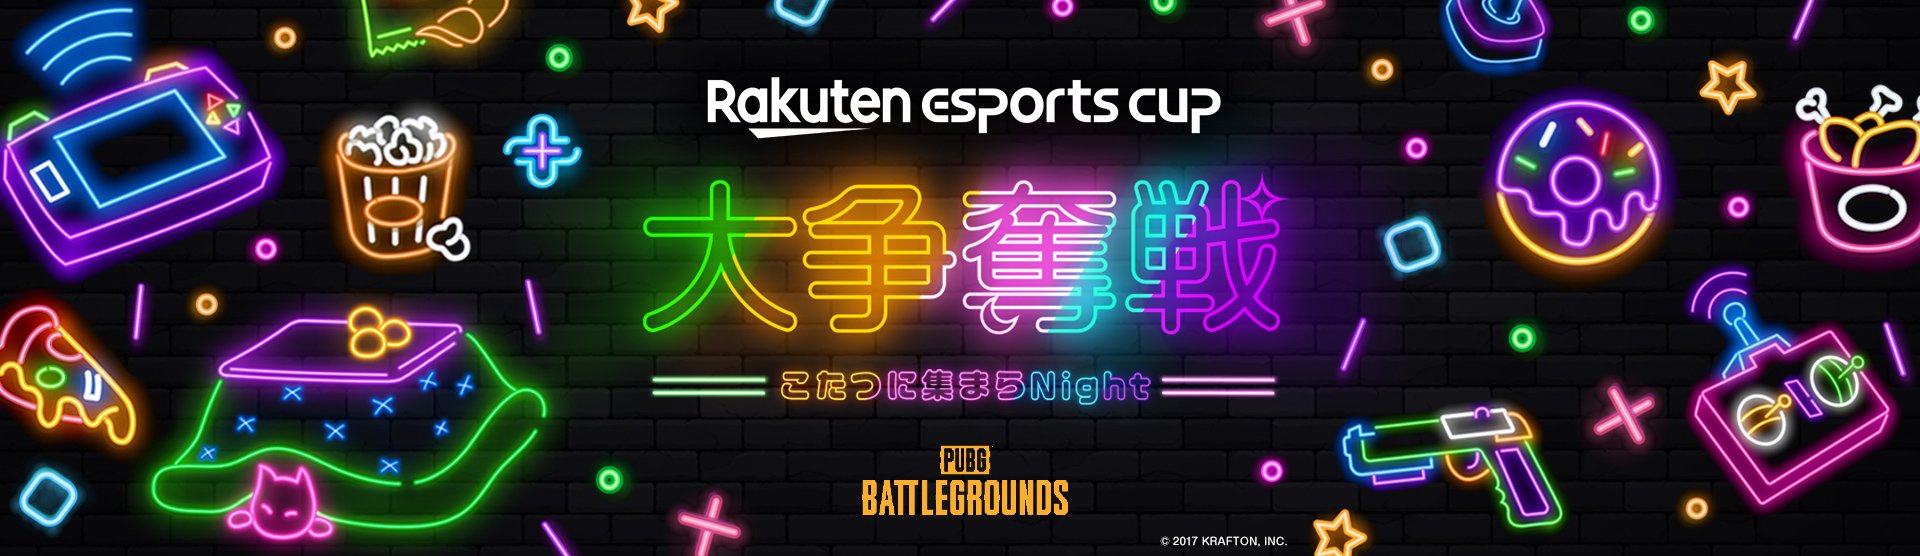 Rakuten esports cup 大争奪戦  －こたつに集まらNight－